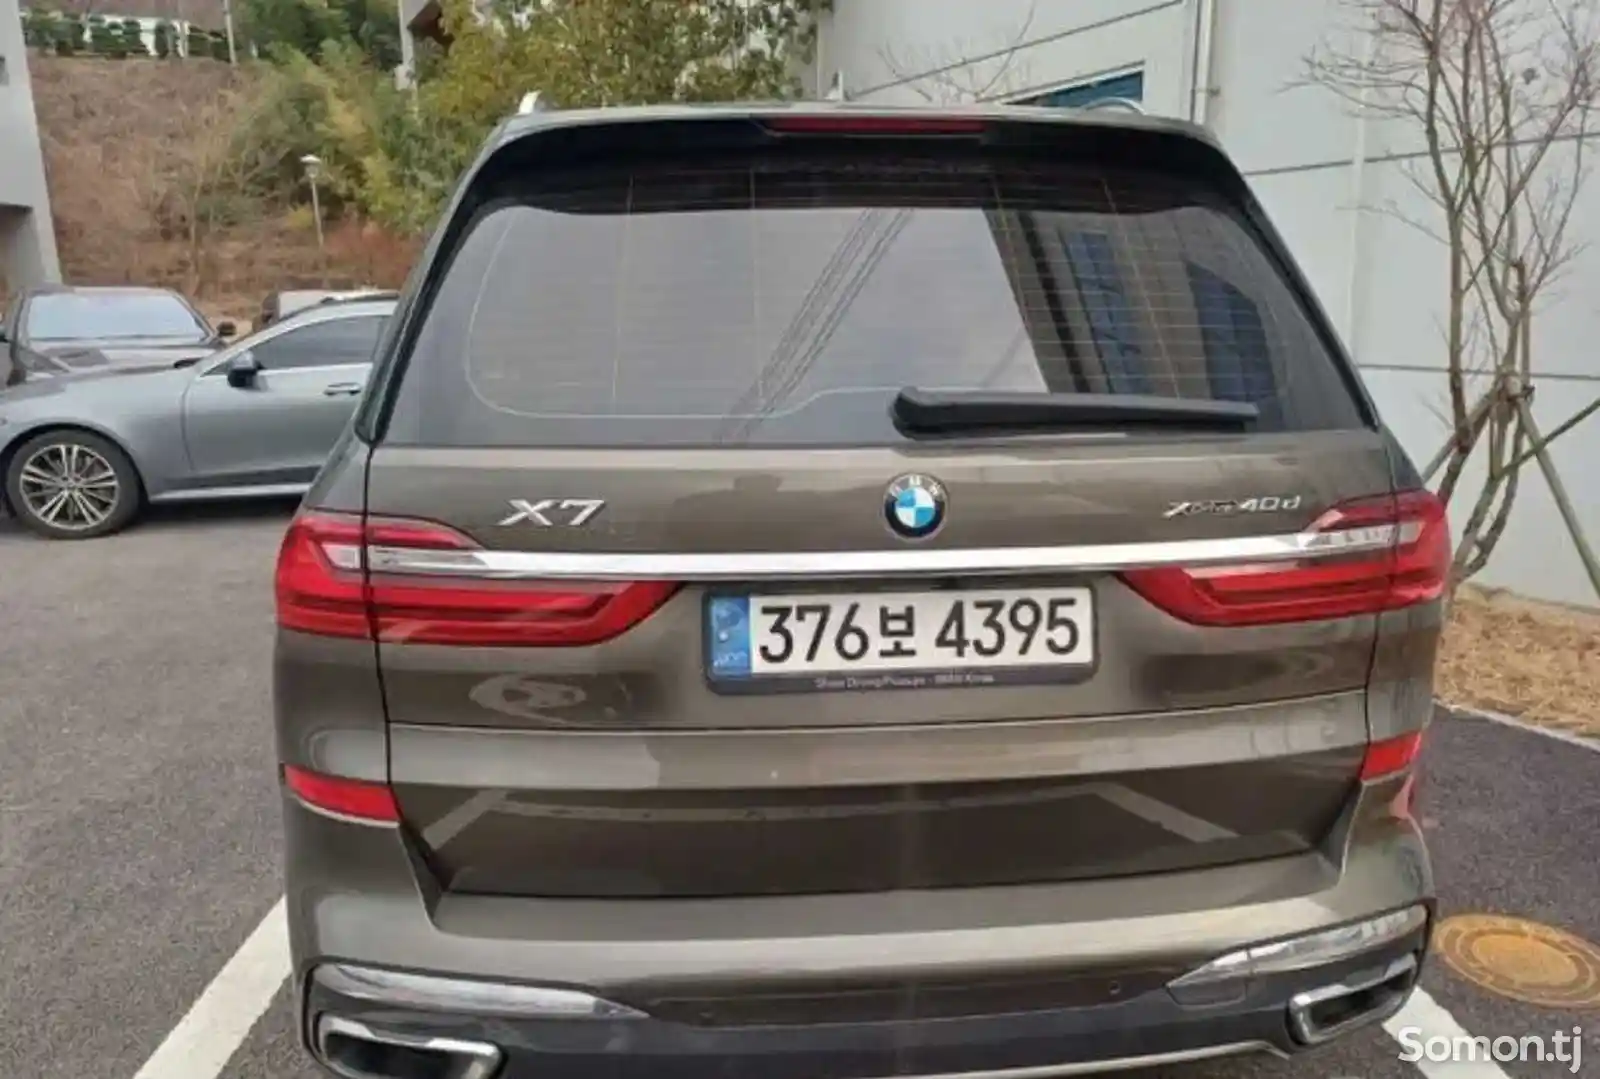 BMW X7, 2022-2